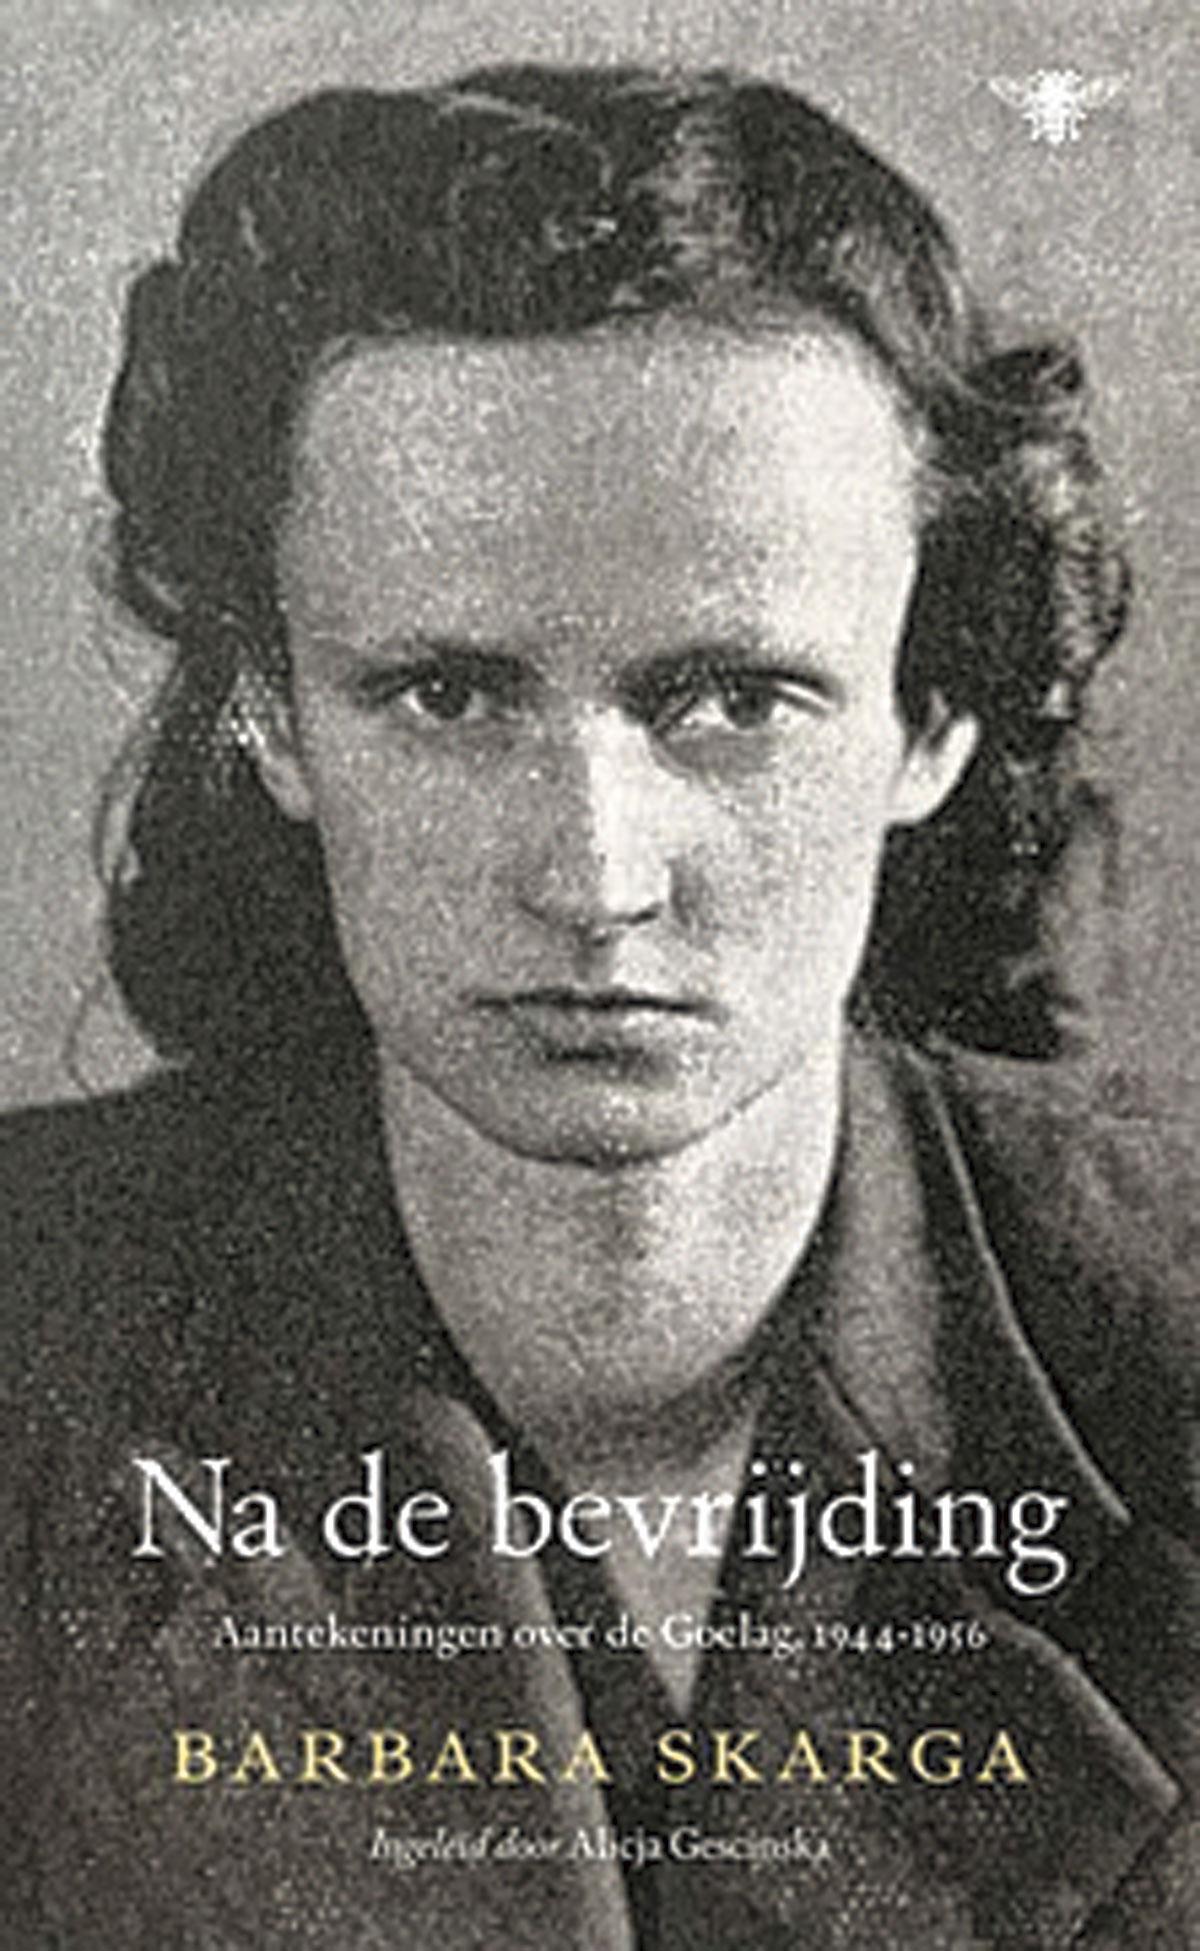 Barbara Skarga, Na de bevrijding: Aantekeningen over de Goelag, 1944‑ 1956, De Bezige Bij, 432 blz., 34,99 euro.